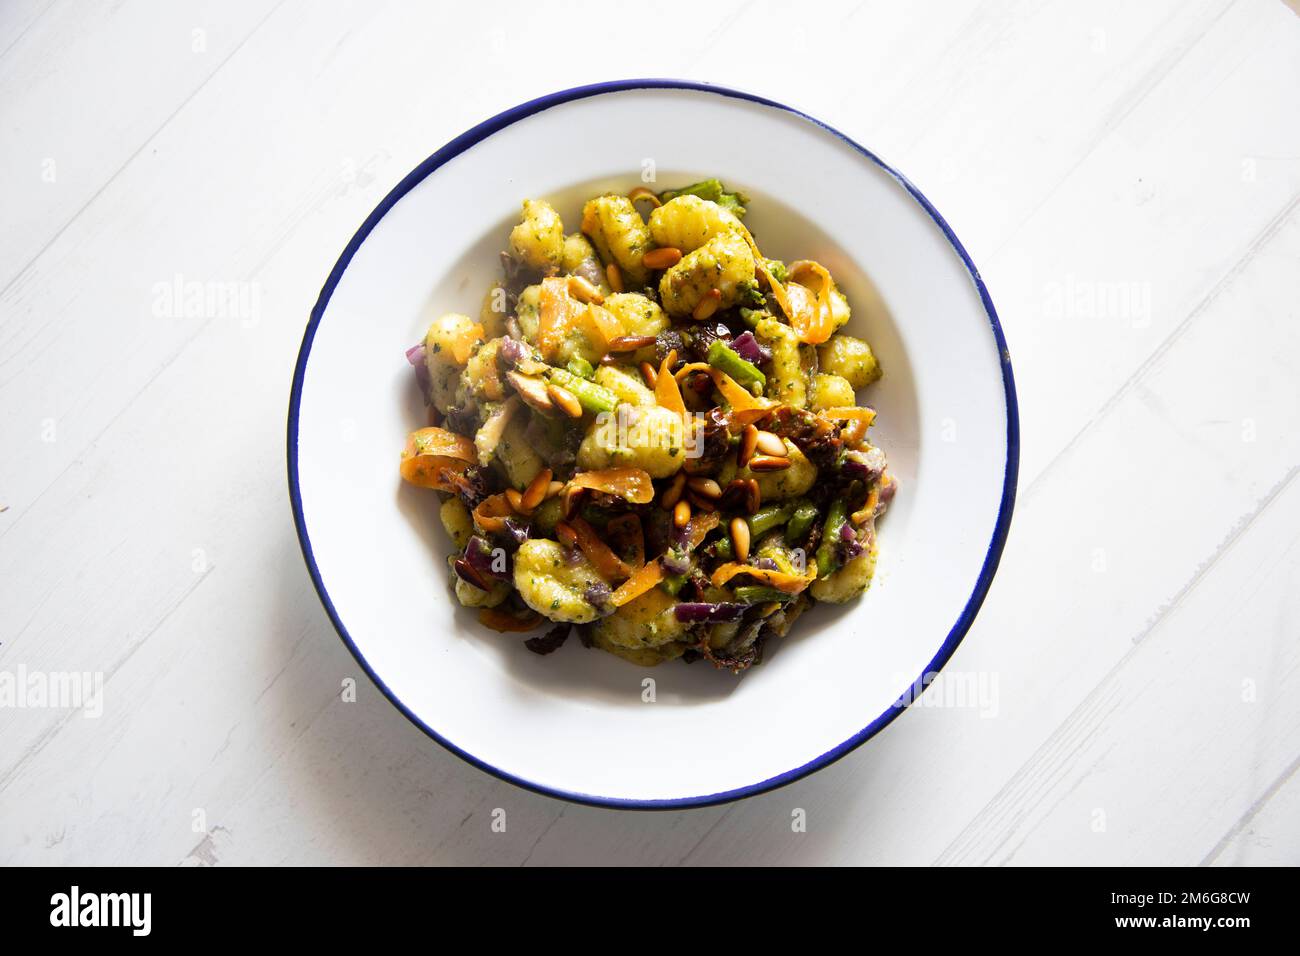 Gnocchi sauté aux légumes grillés. Recette italienne typique Banque D'Images